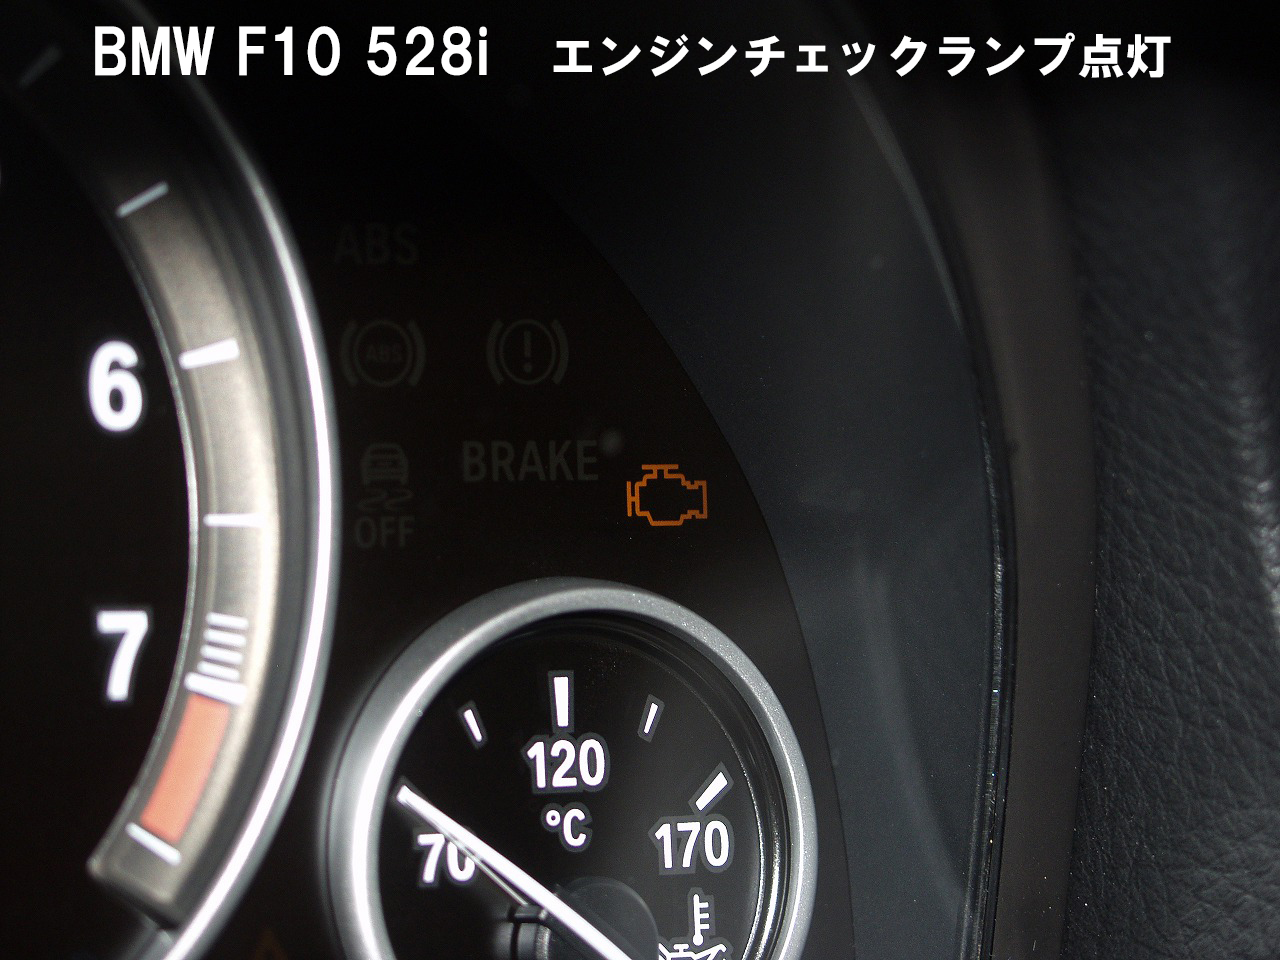 BMW F10 528iのエンジンチェックランプが点灯しました。